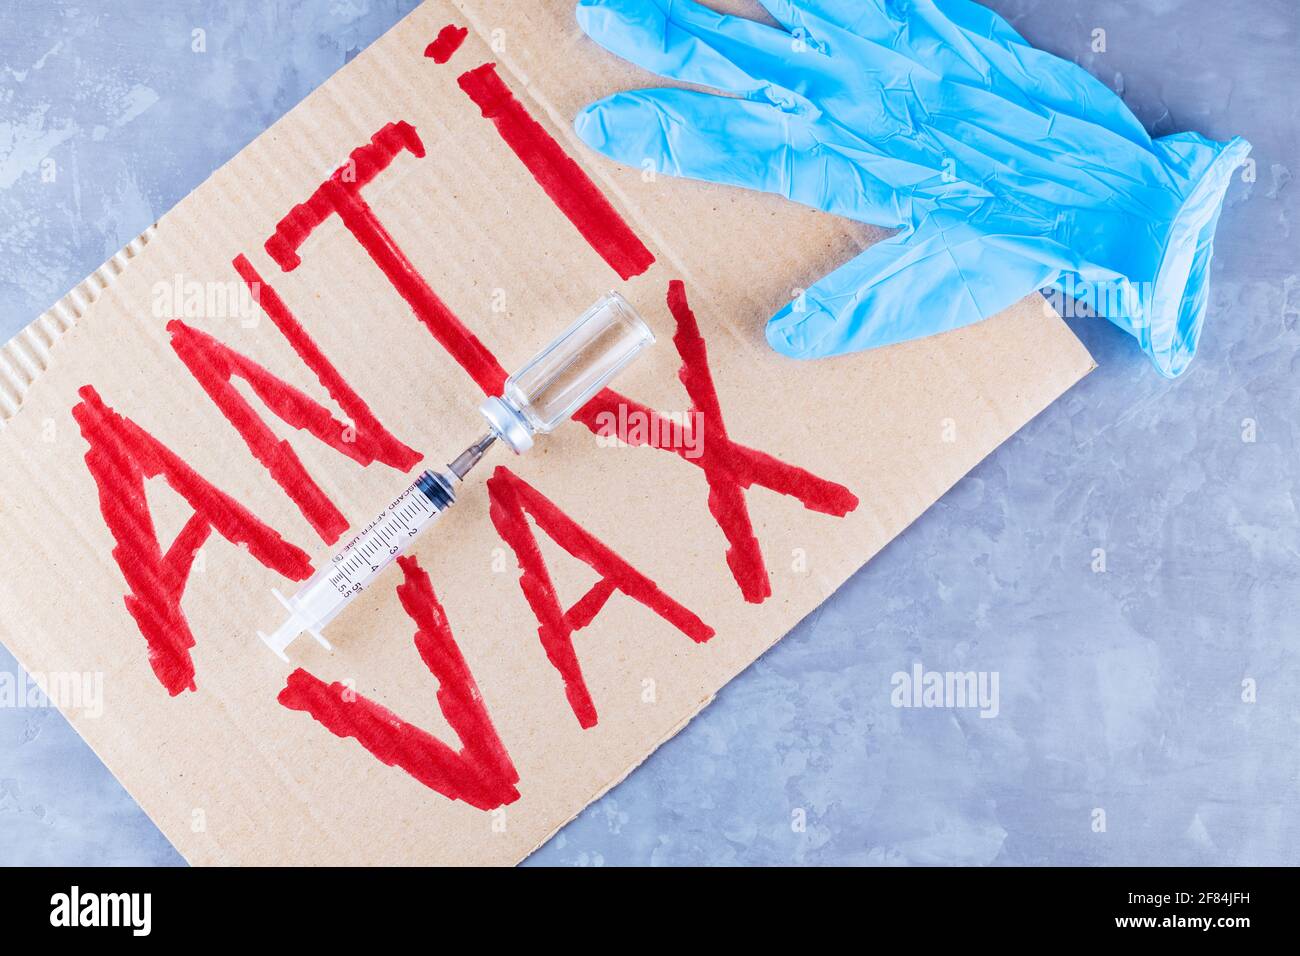 Étiquette prottive « anti vax ». Arrêter le concept de vaccination. Coronavirus anti VAX controverse concept Banque D'Images